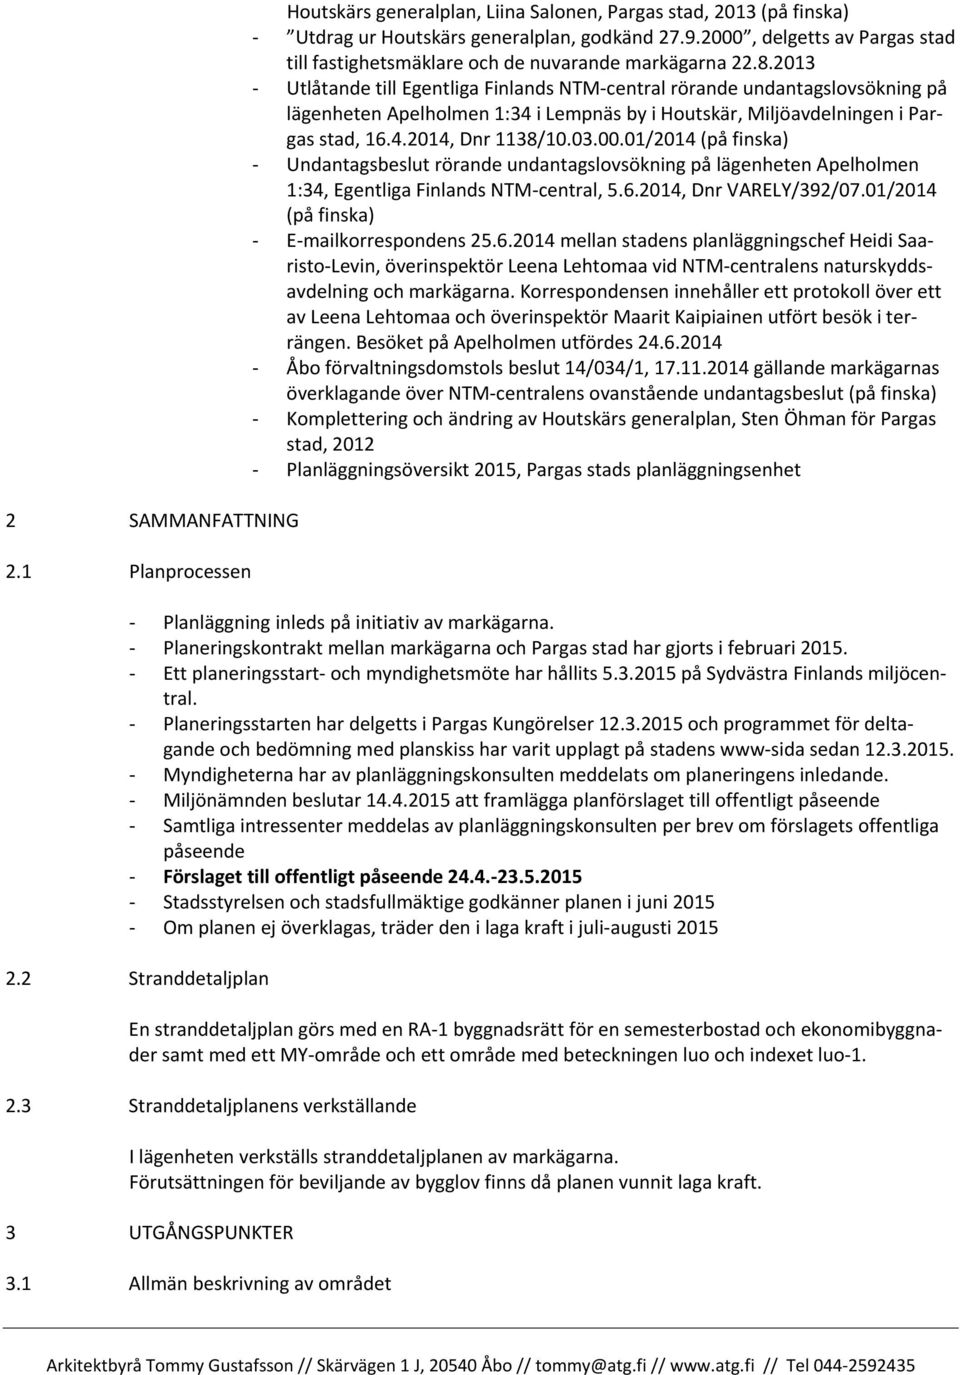 2013 - Utlåtande till Egentliga Finlands NTM-central rörande undantagslovsökning på lägenheten Apelholmen 1:34 i Lempnäs by i Houtskär, Miljöavdelningen i Pargas stad, 16.4.2014, Dnr 1138/10.03.00.